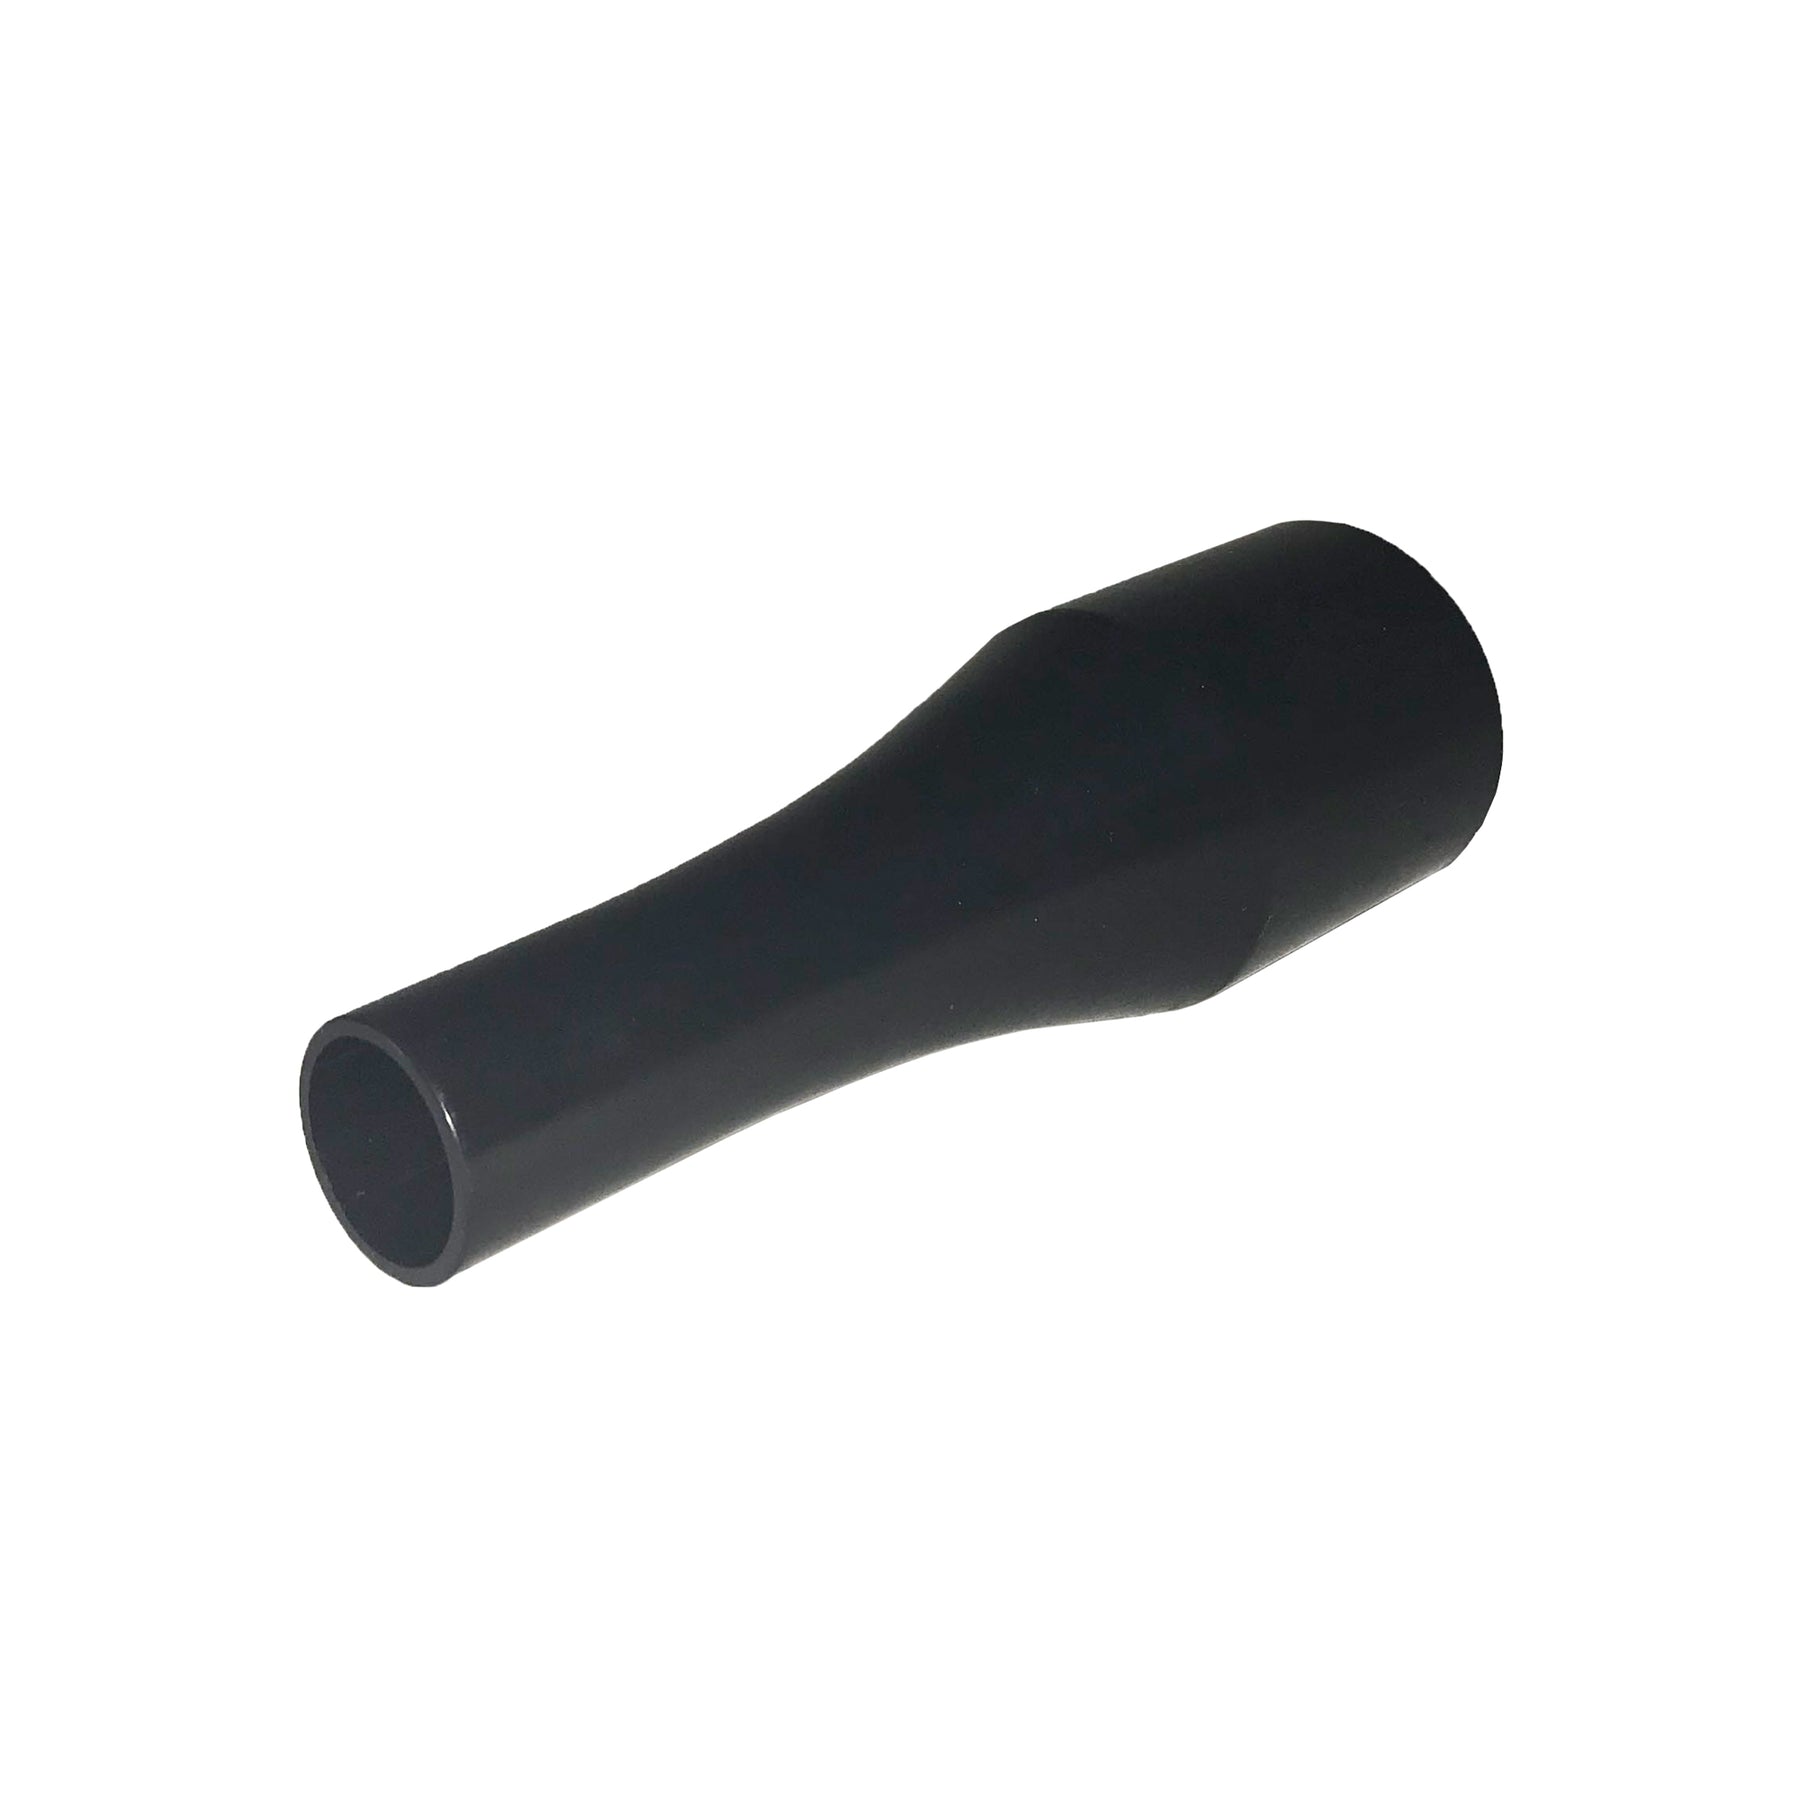 Ugello rotondo BRÜHL in plastica nera, progettato per un'asciugatura efficiente e uniforme, ideale per detailers professionisti.